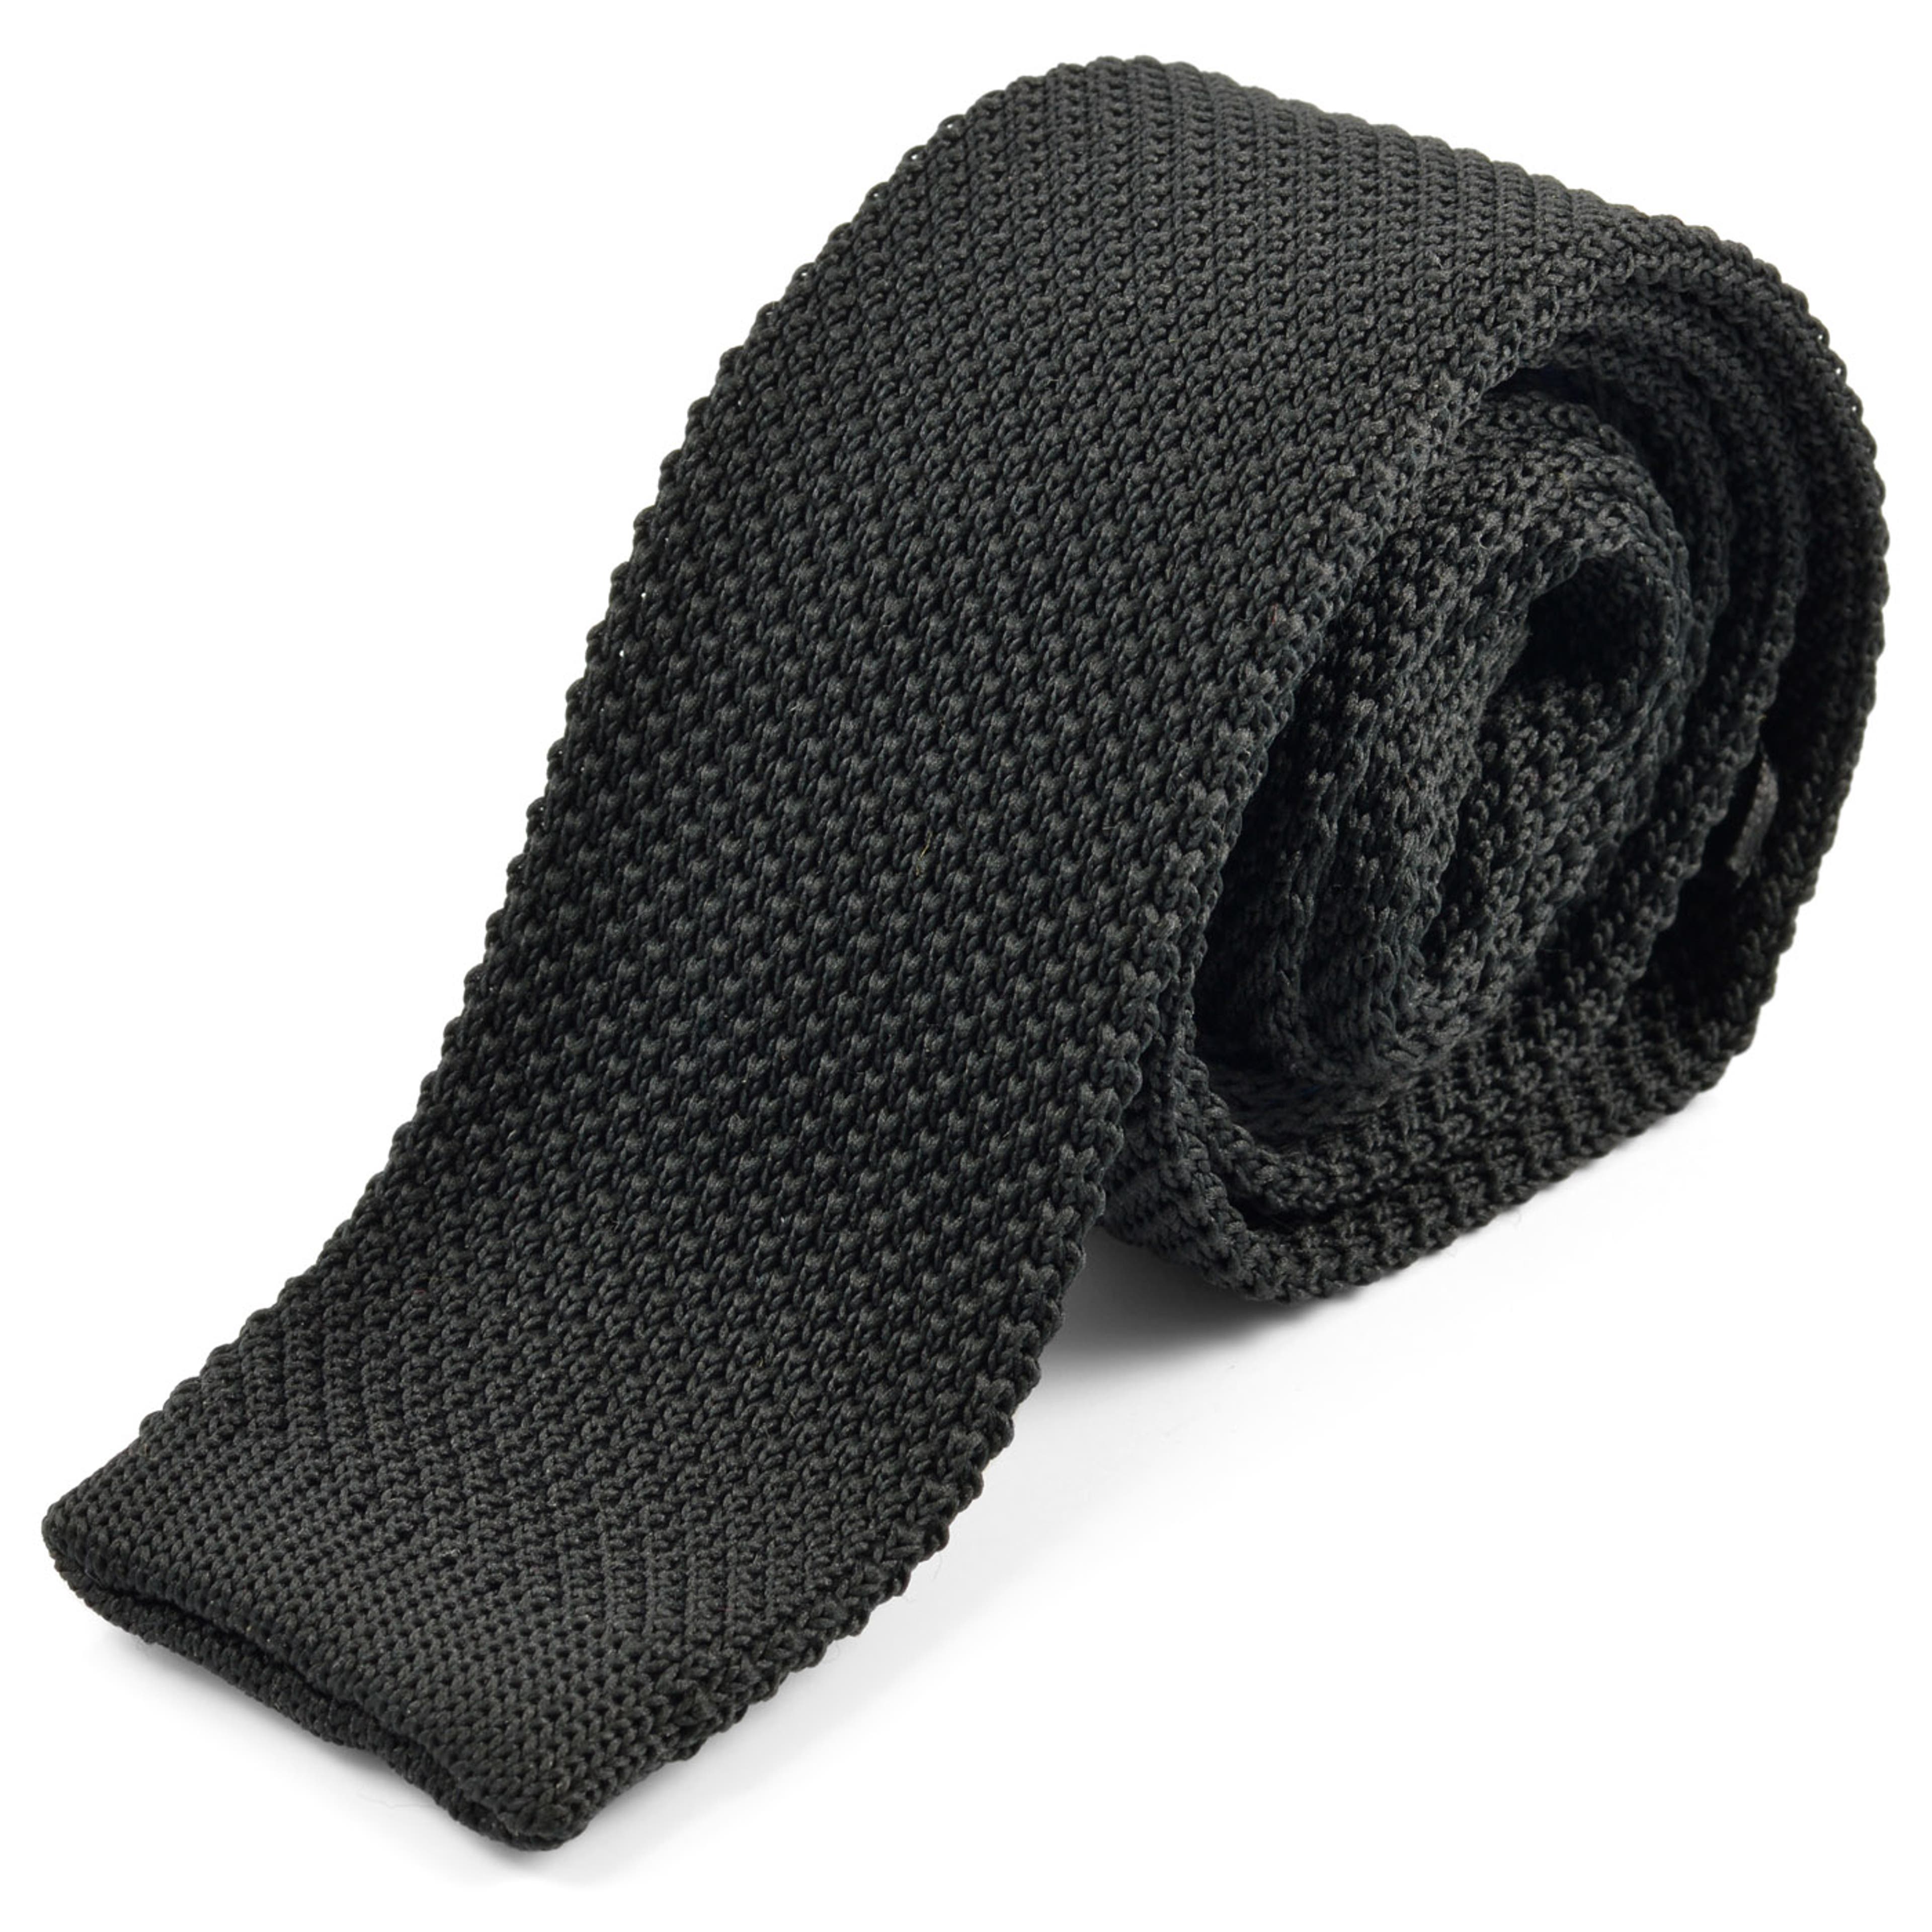 Las corbatas negras más bonitas